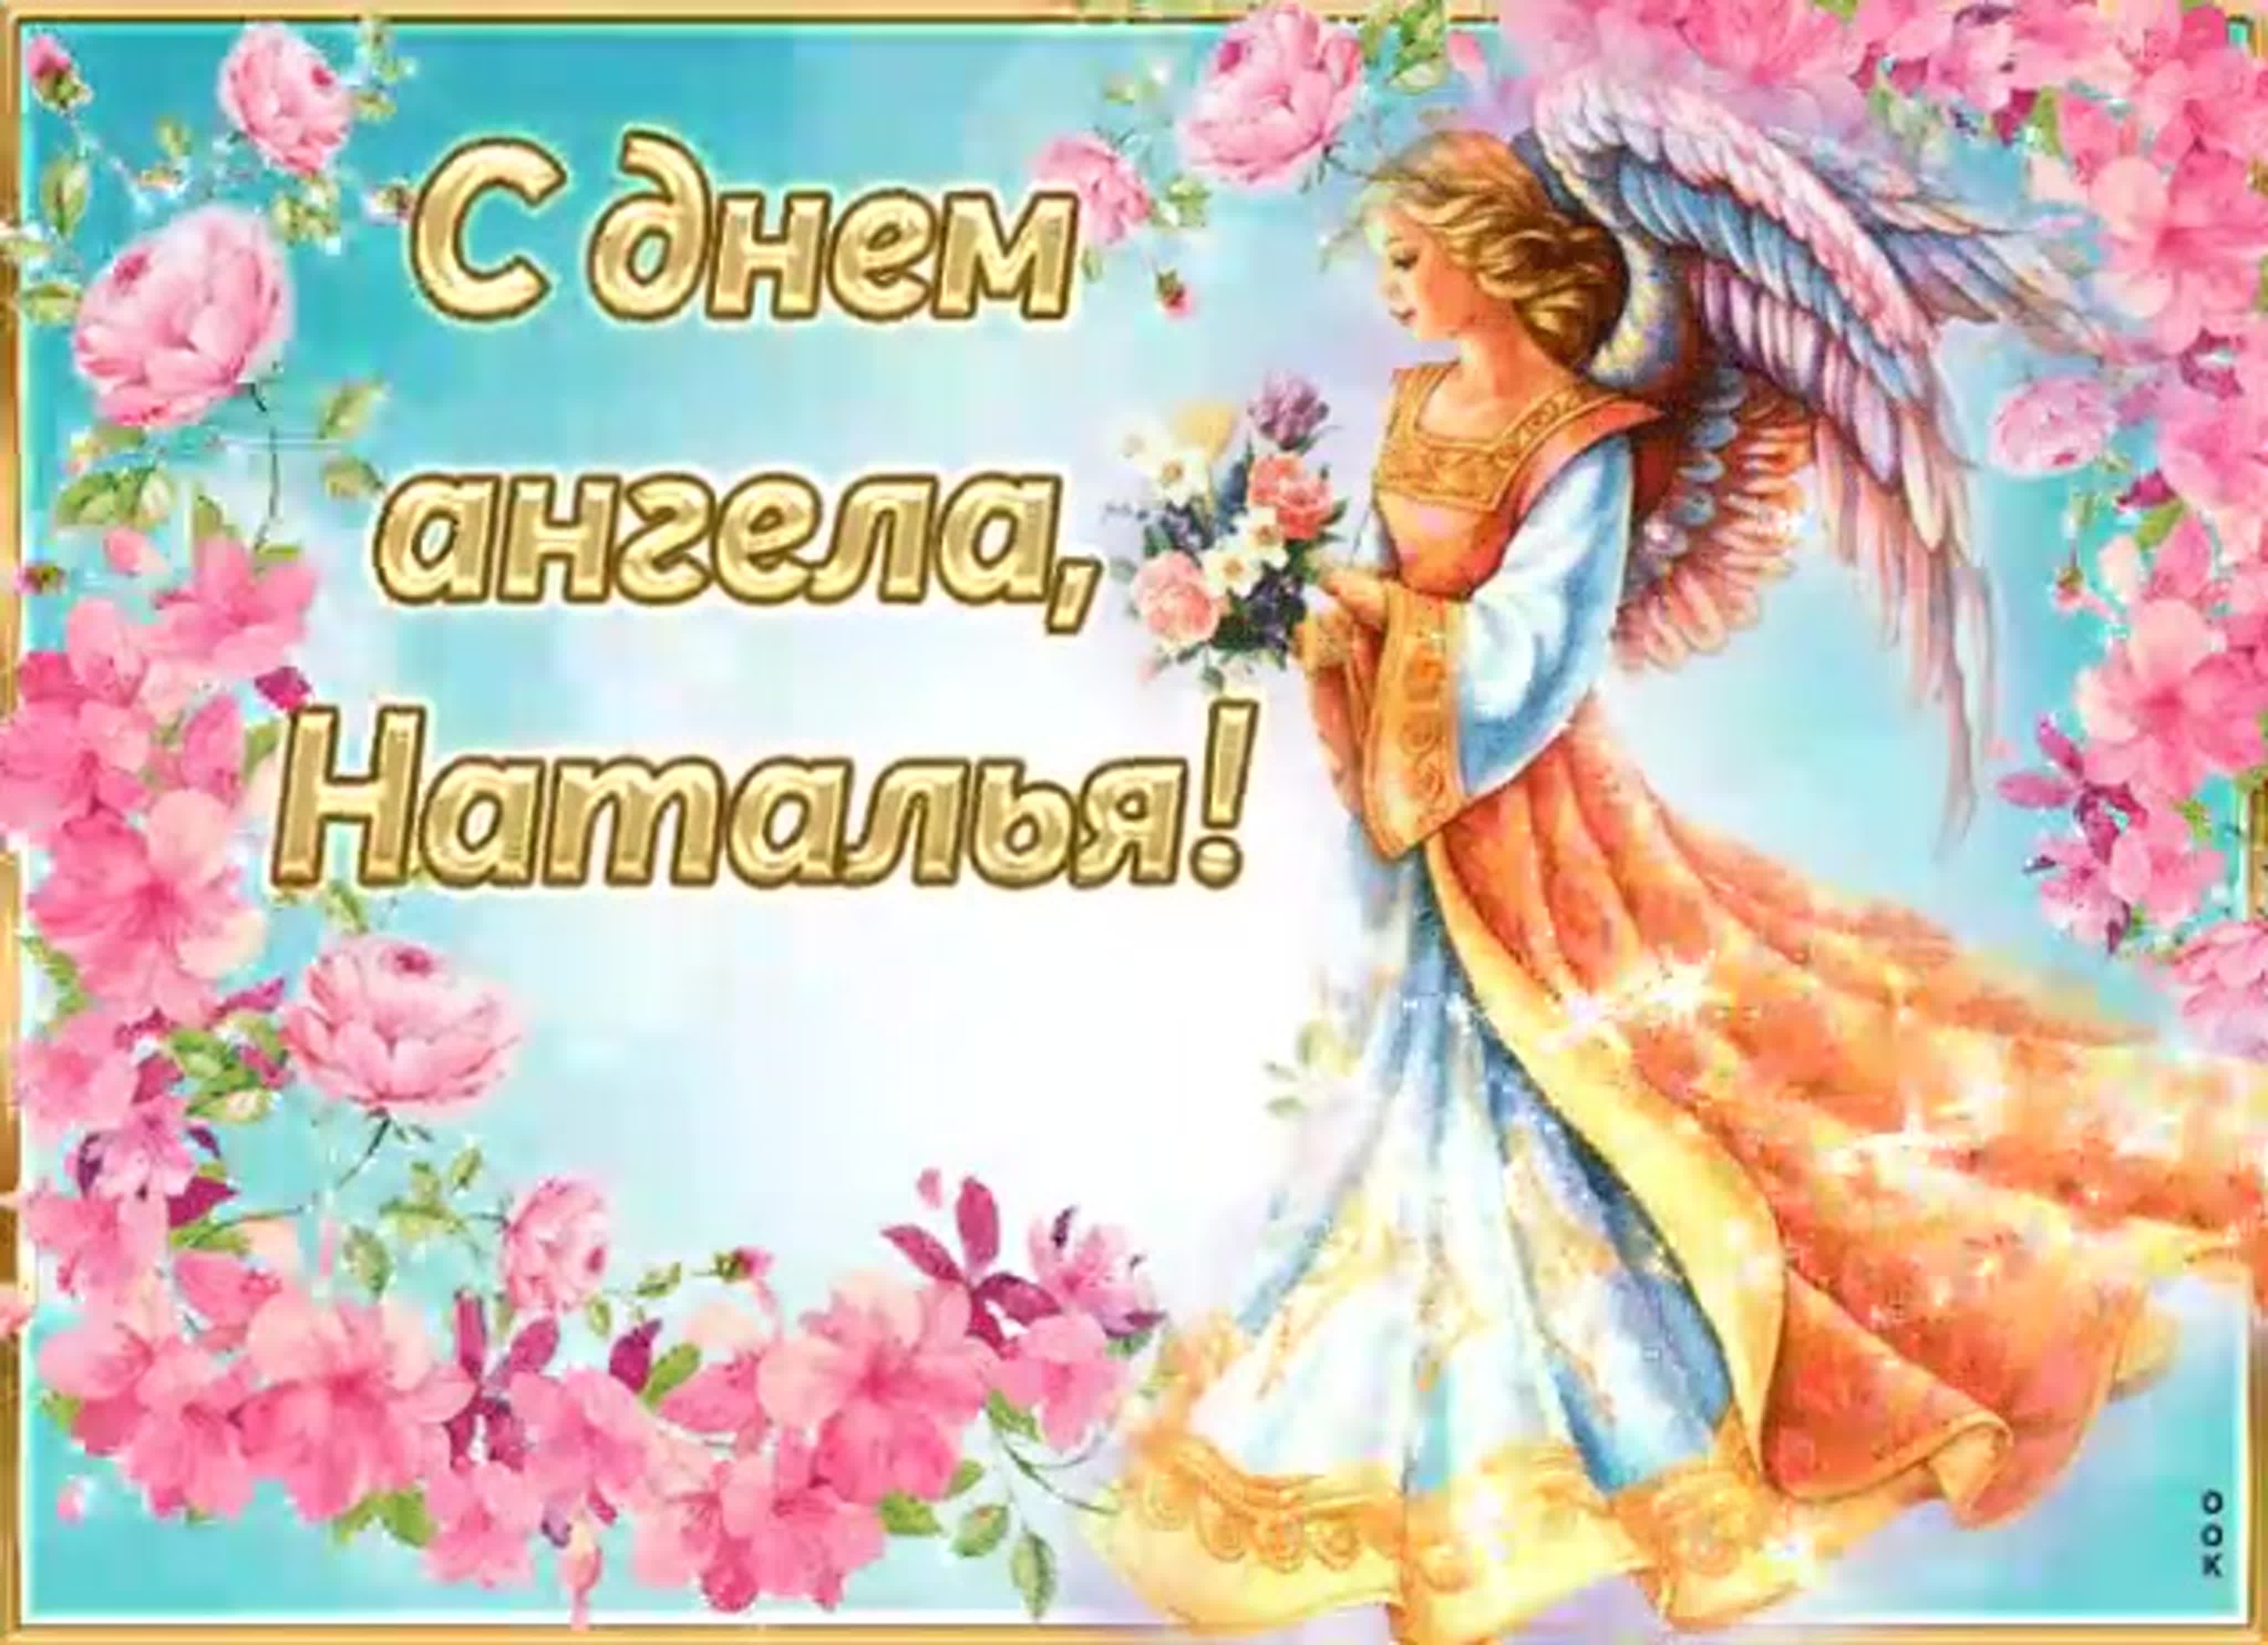 Поздравление с днем ангела Ксении